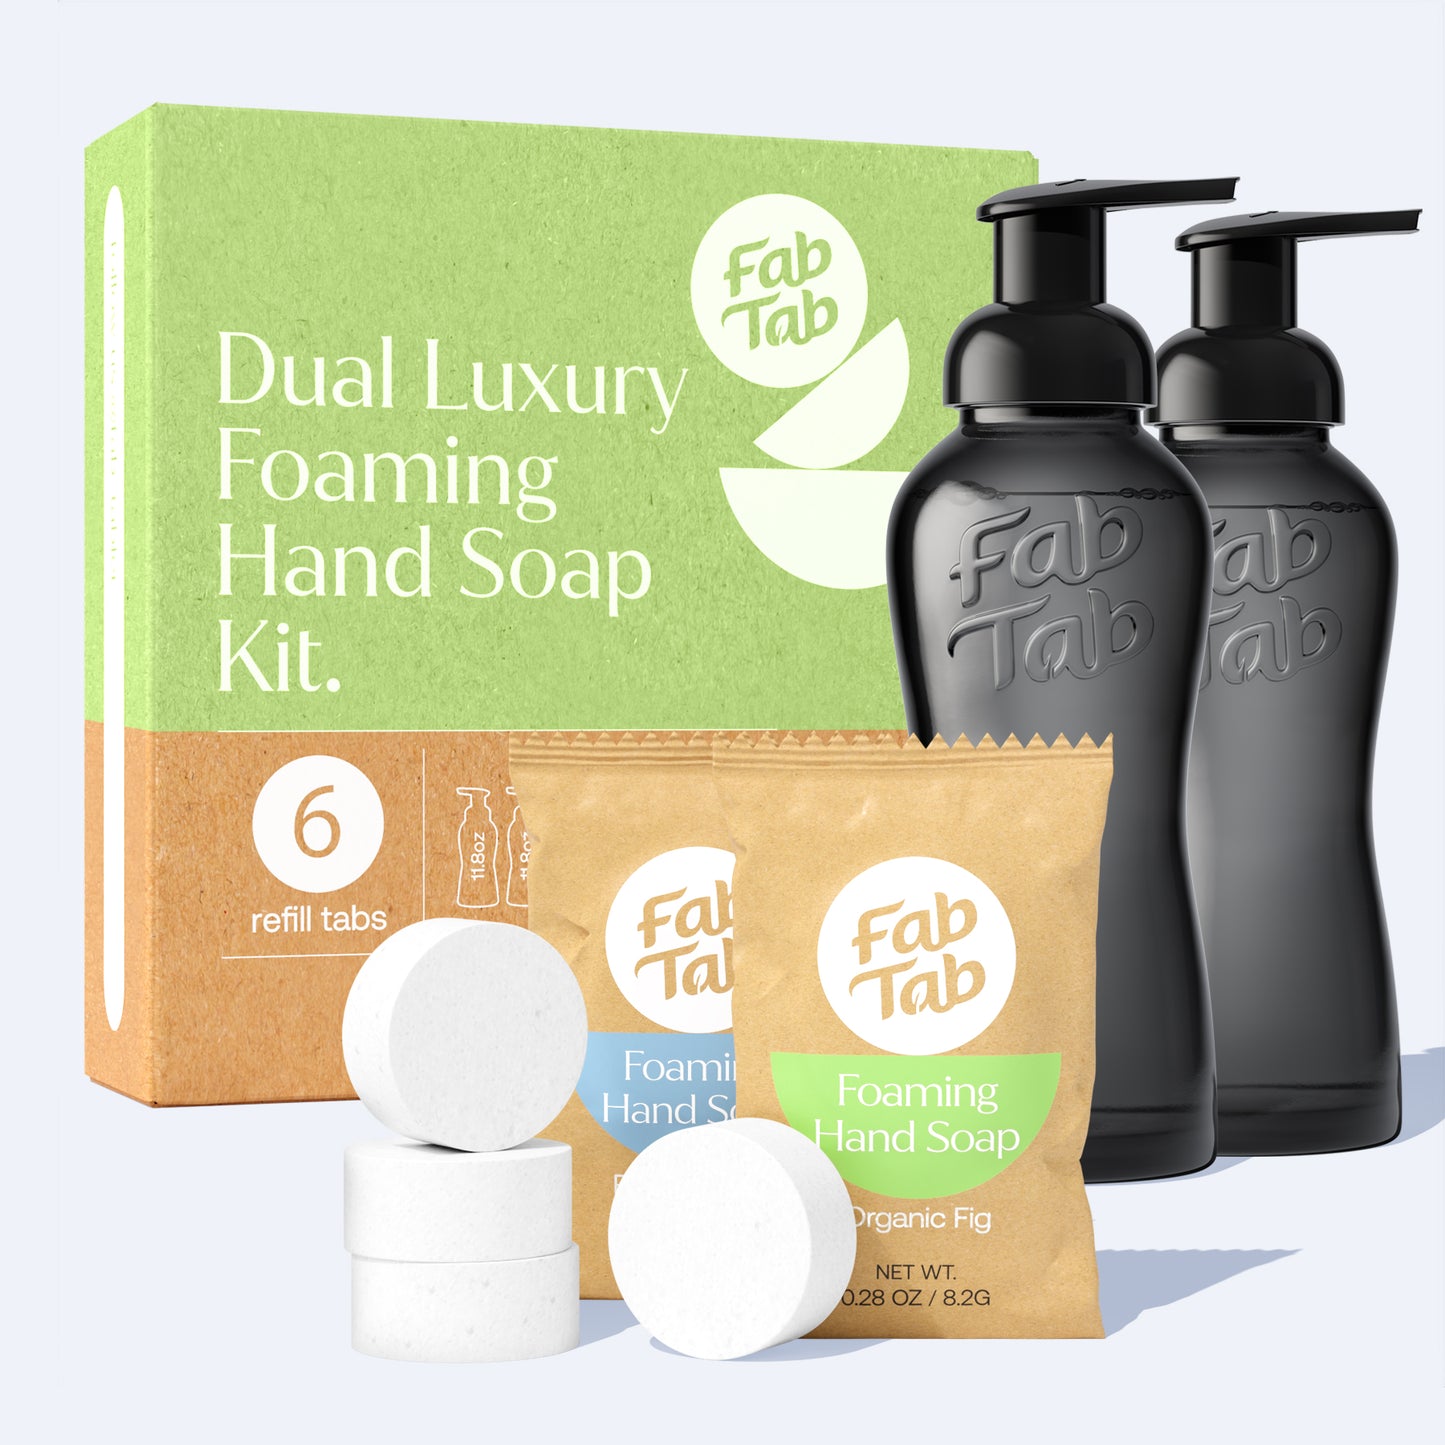 Dual Luxury Foaming Hand Soap Kit